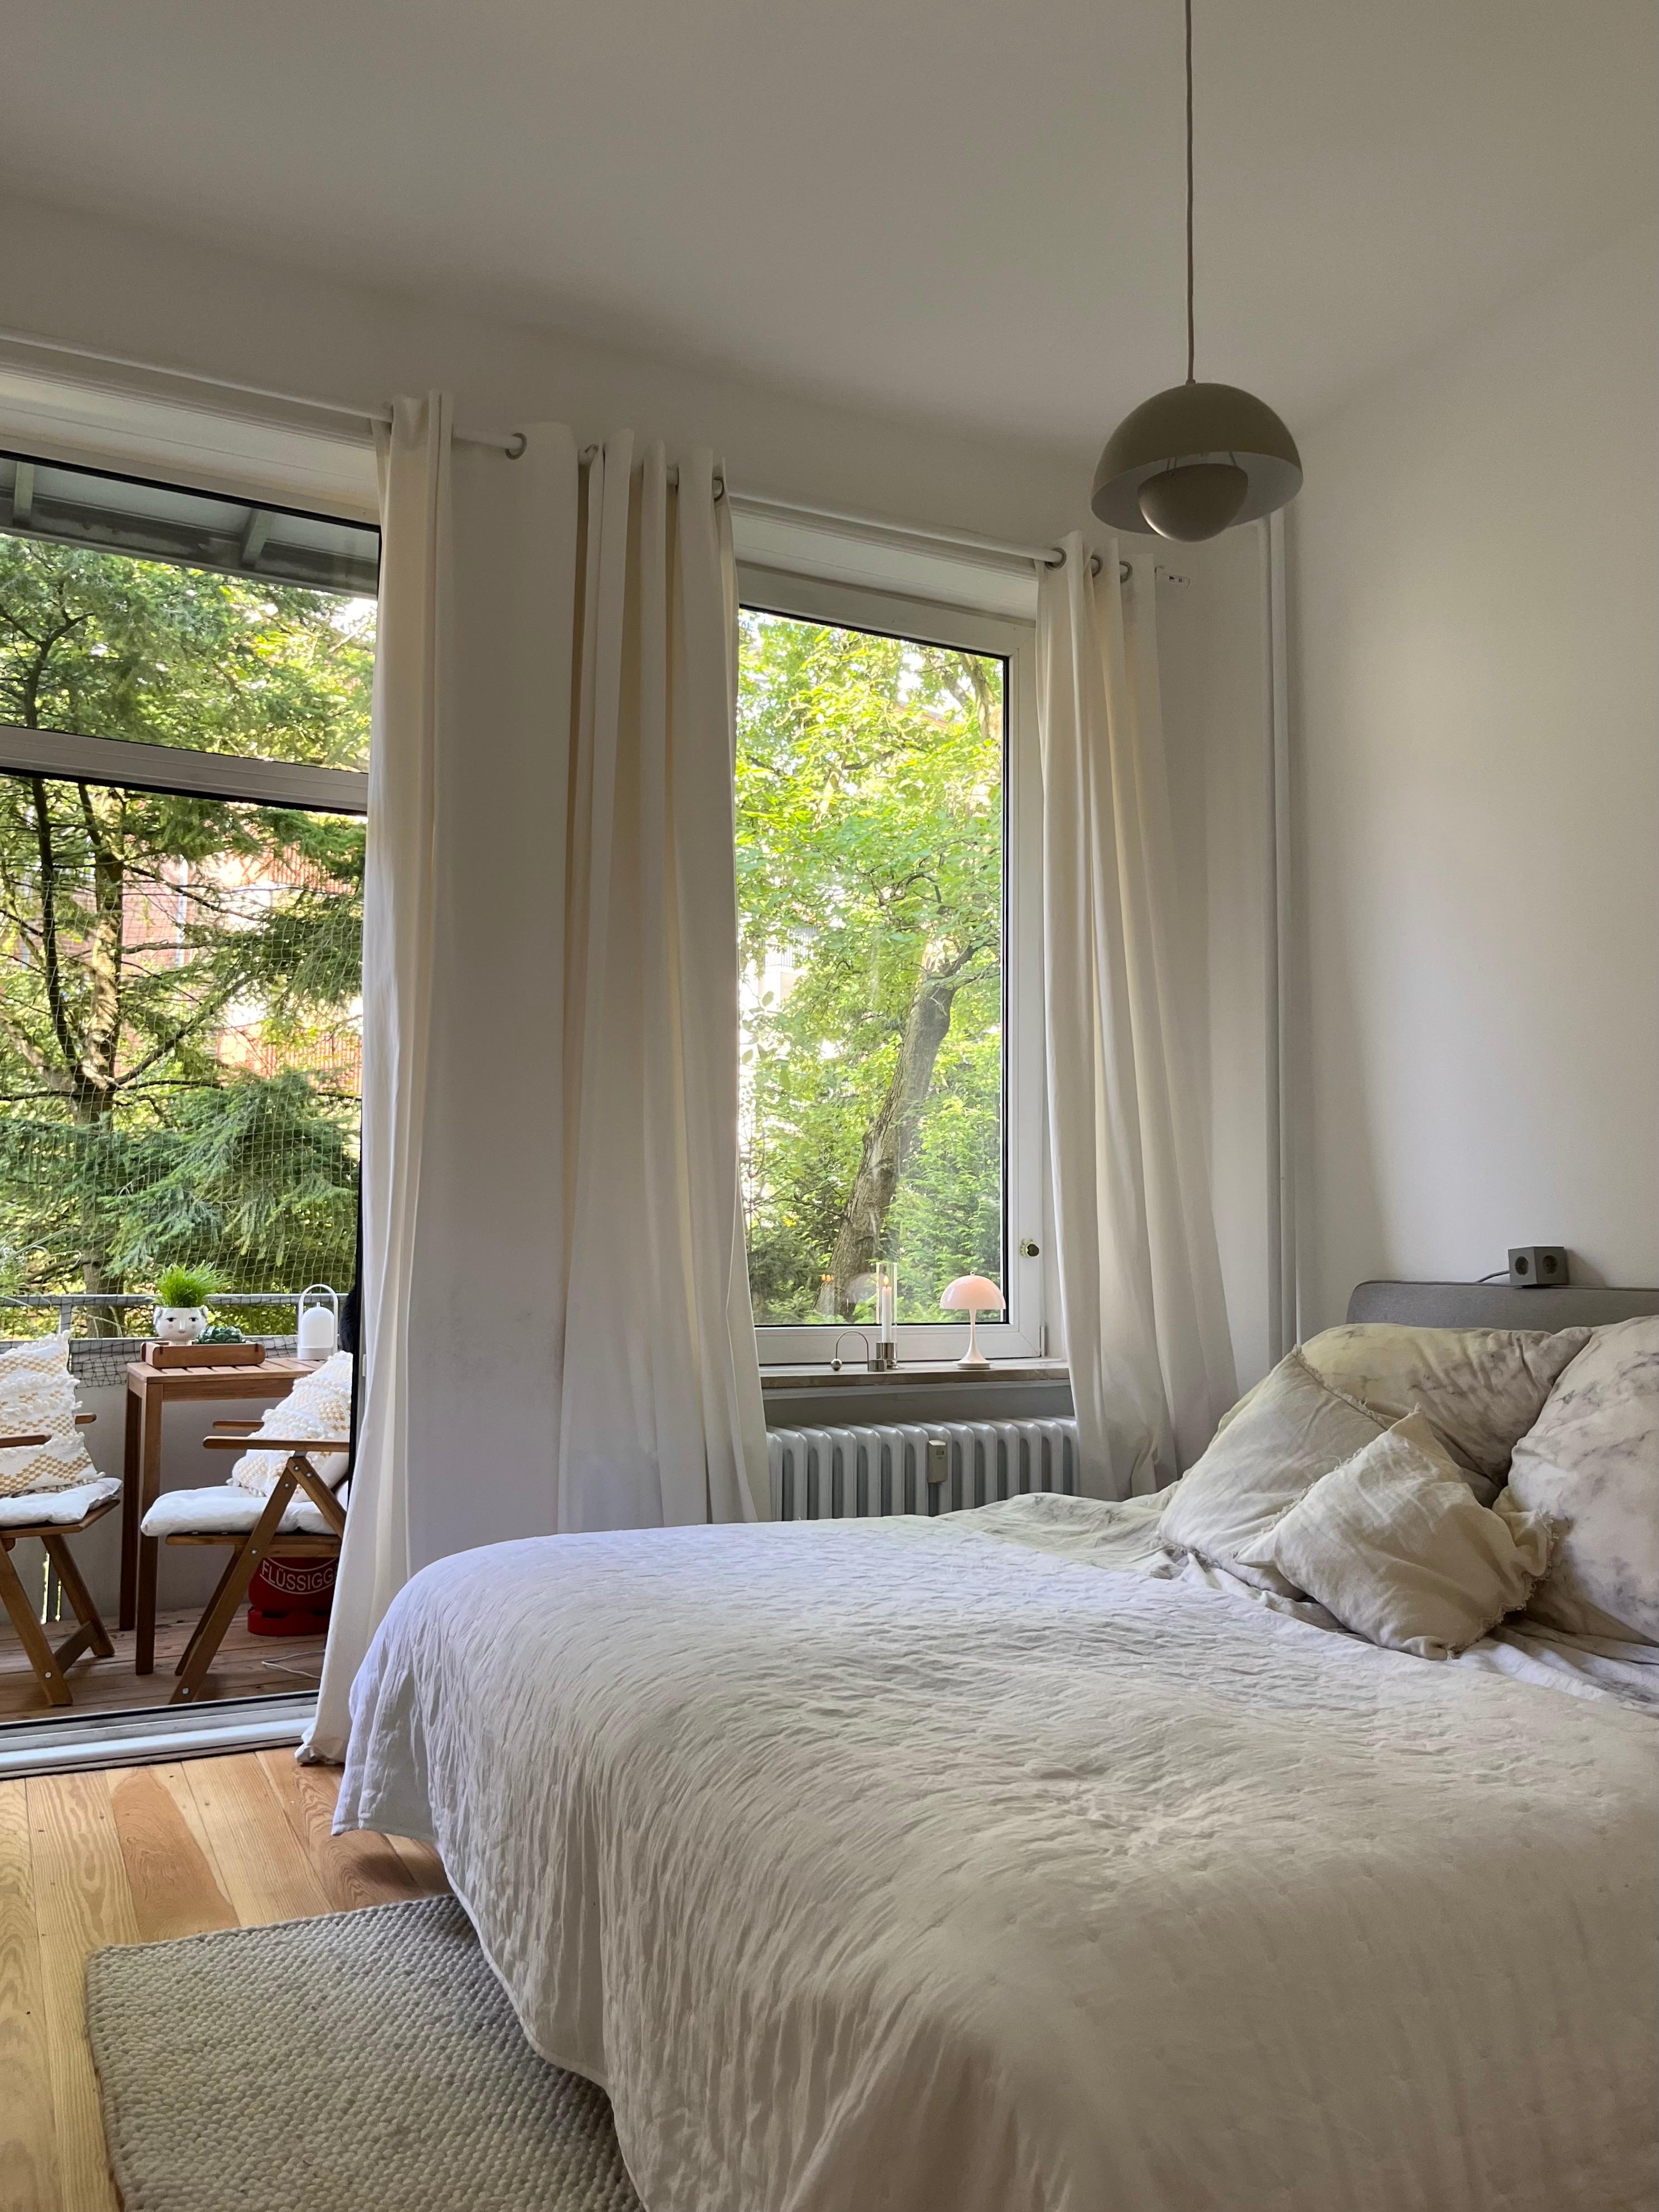 #schlafzimmer #altbauwohnung #blickinsgrüne #balkon #skandinavischwohnen #minimalismus